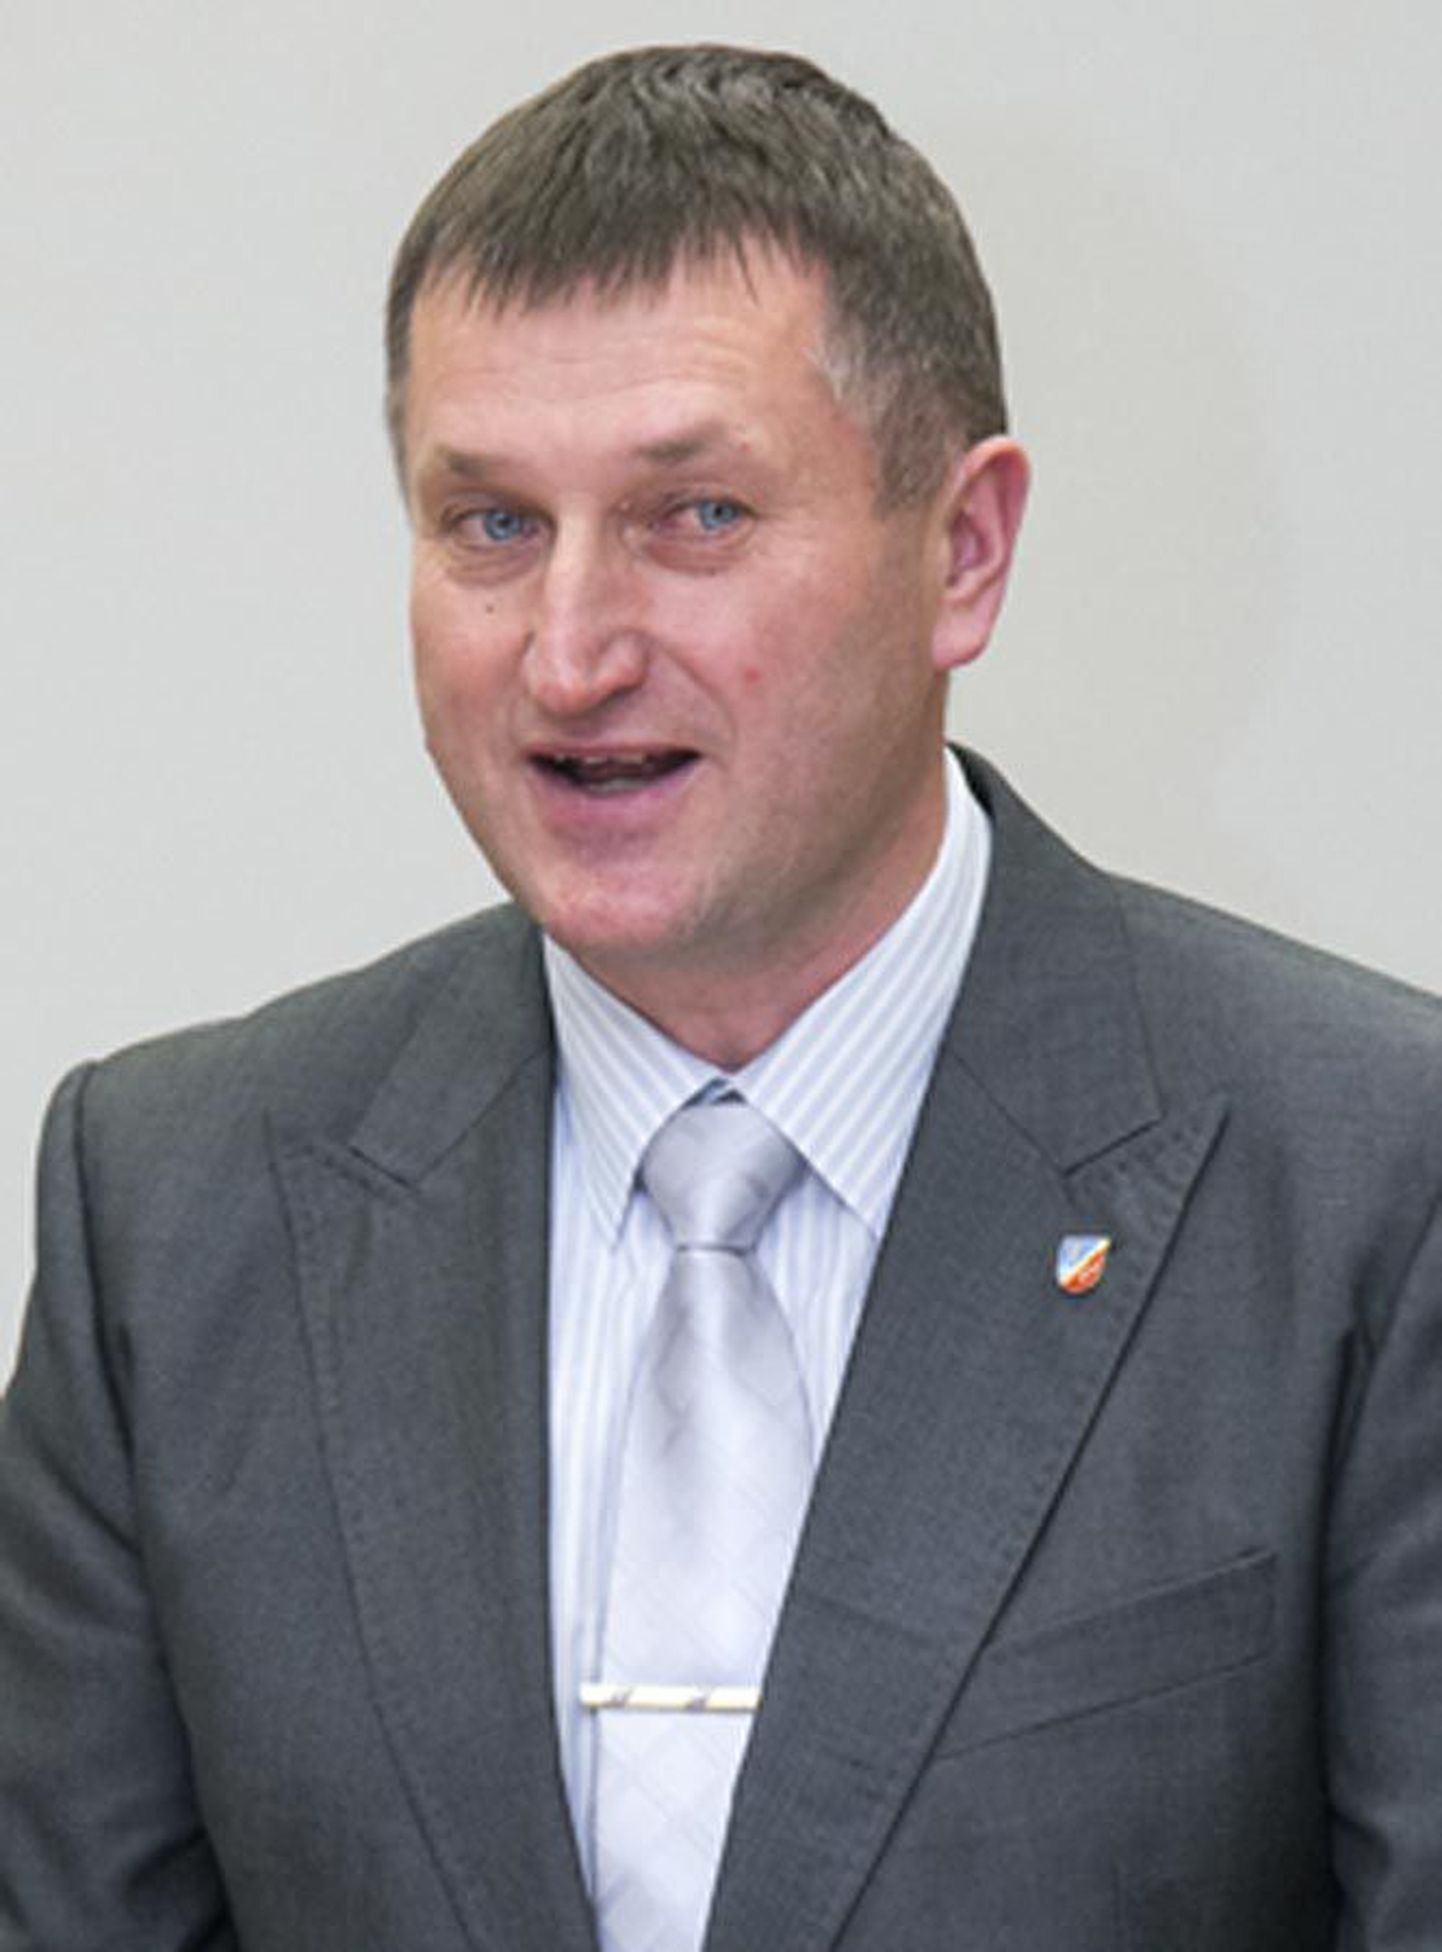 Viljandi maavanem Erich Palm kandideerib riigikogu valimistel Sotsiaaldemokraatliku Erakonna nimekirjas.